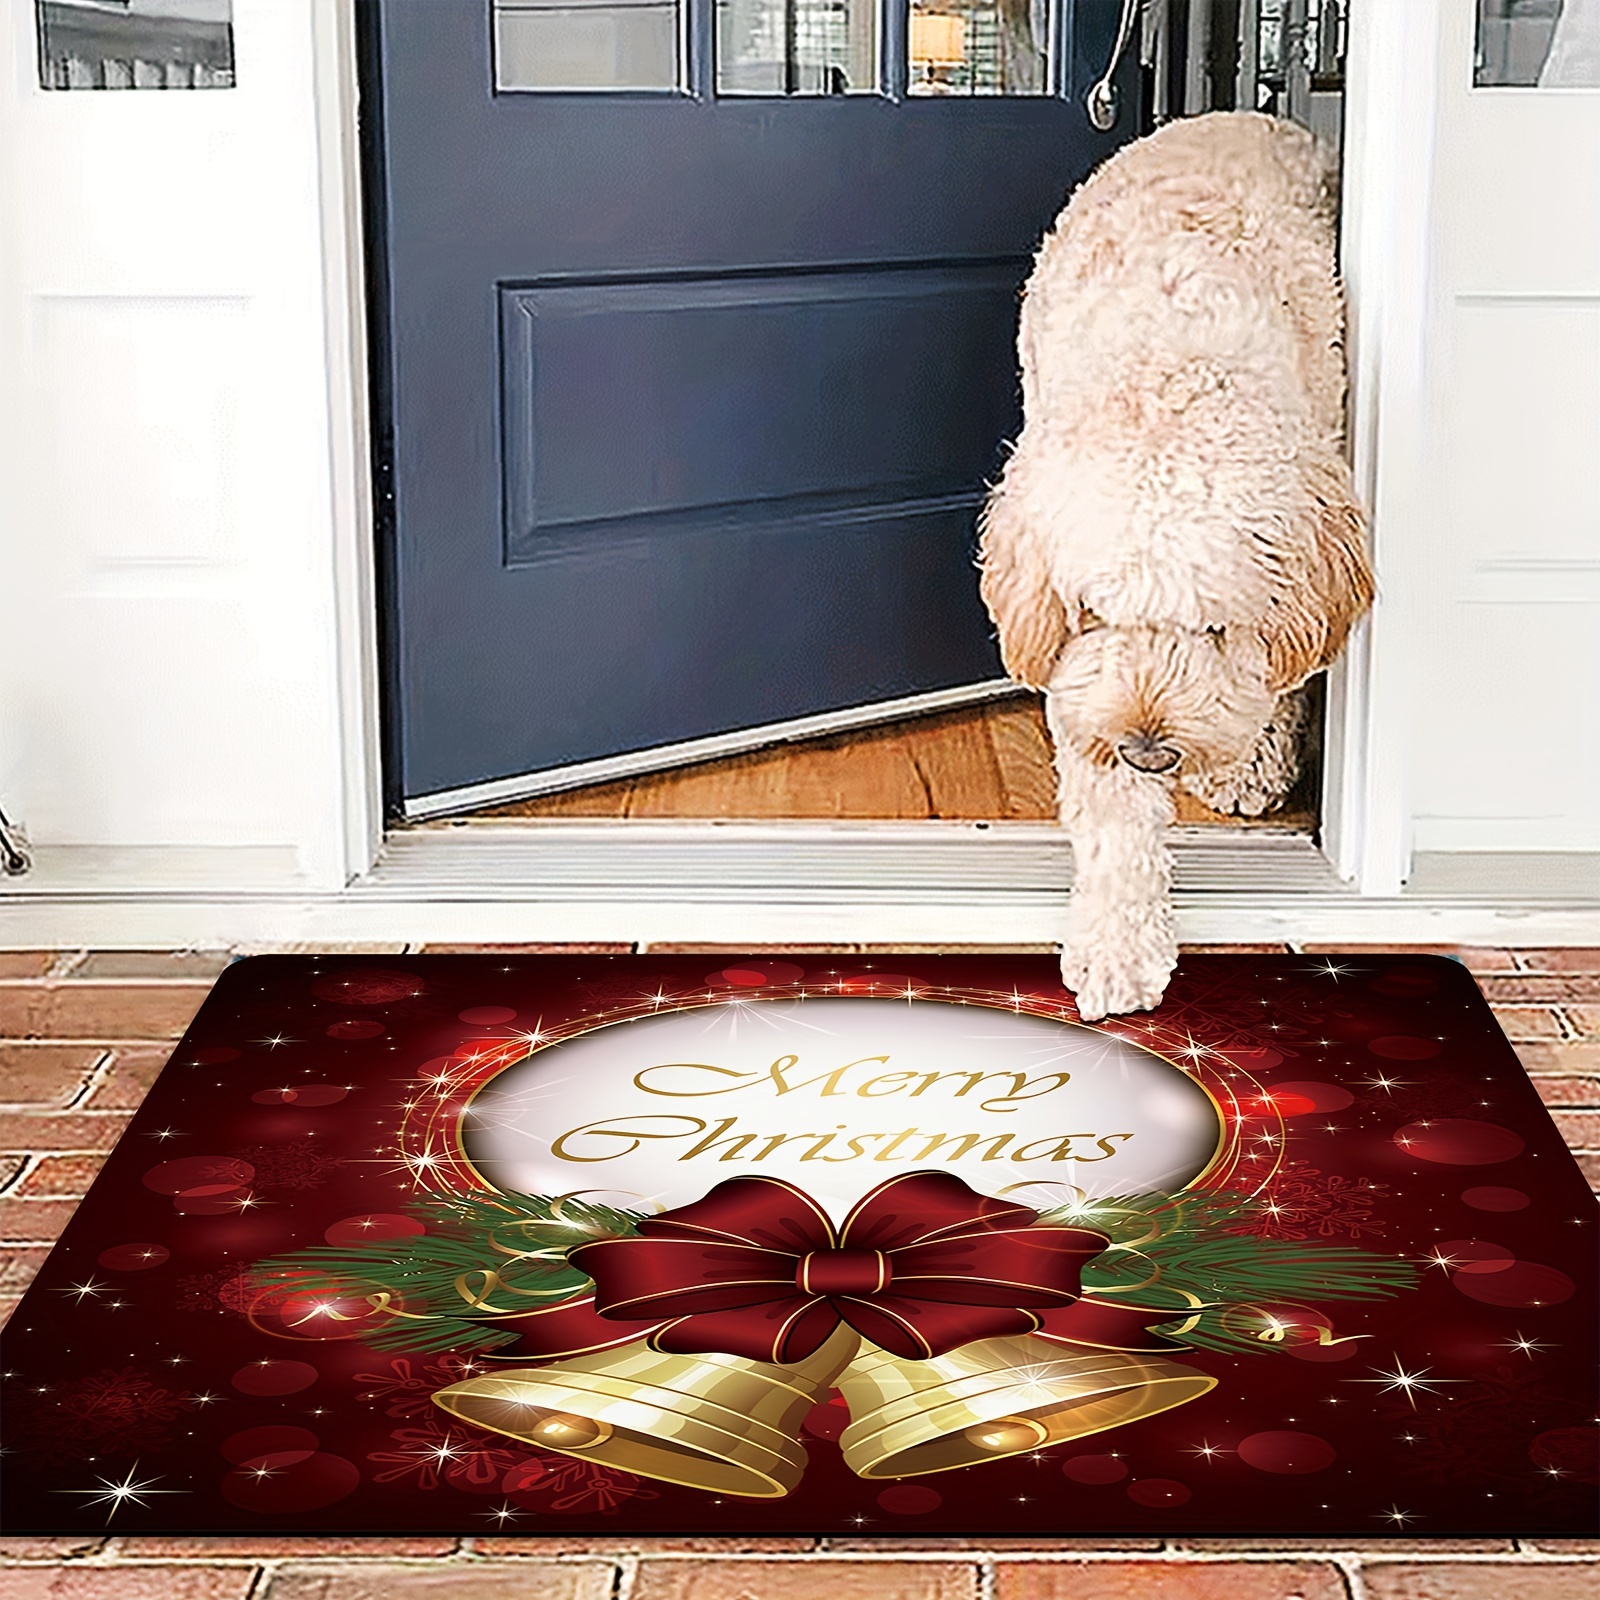  Christmas Indoor Doormat,Front Back Door Mats with Non